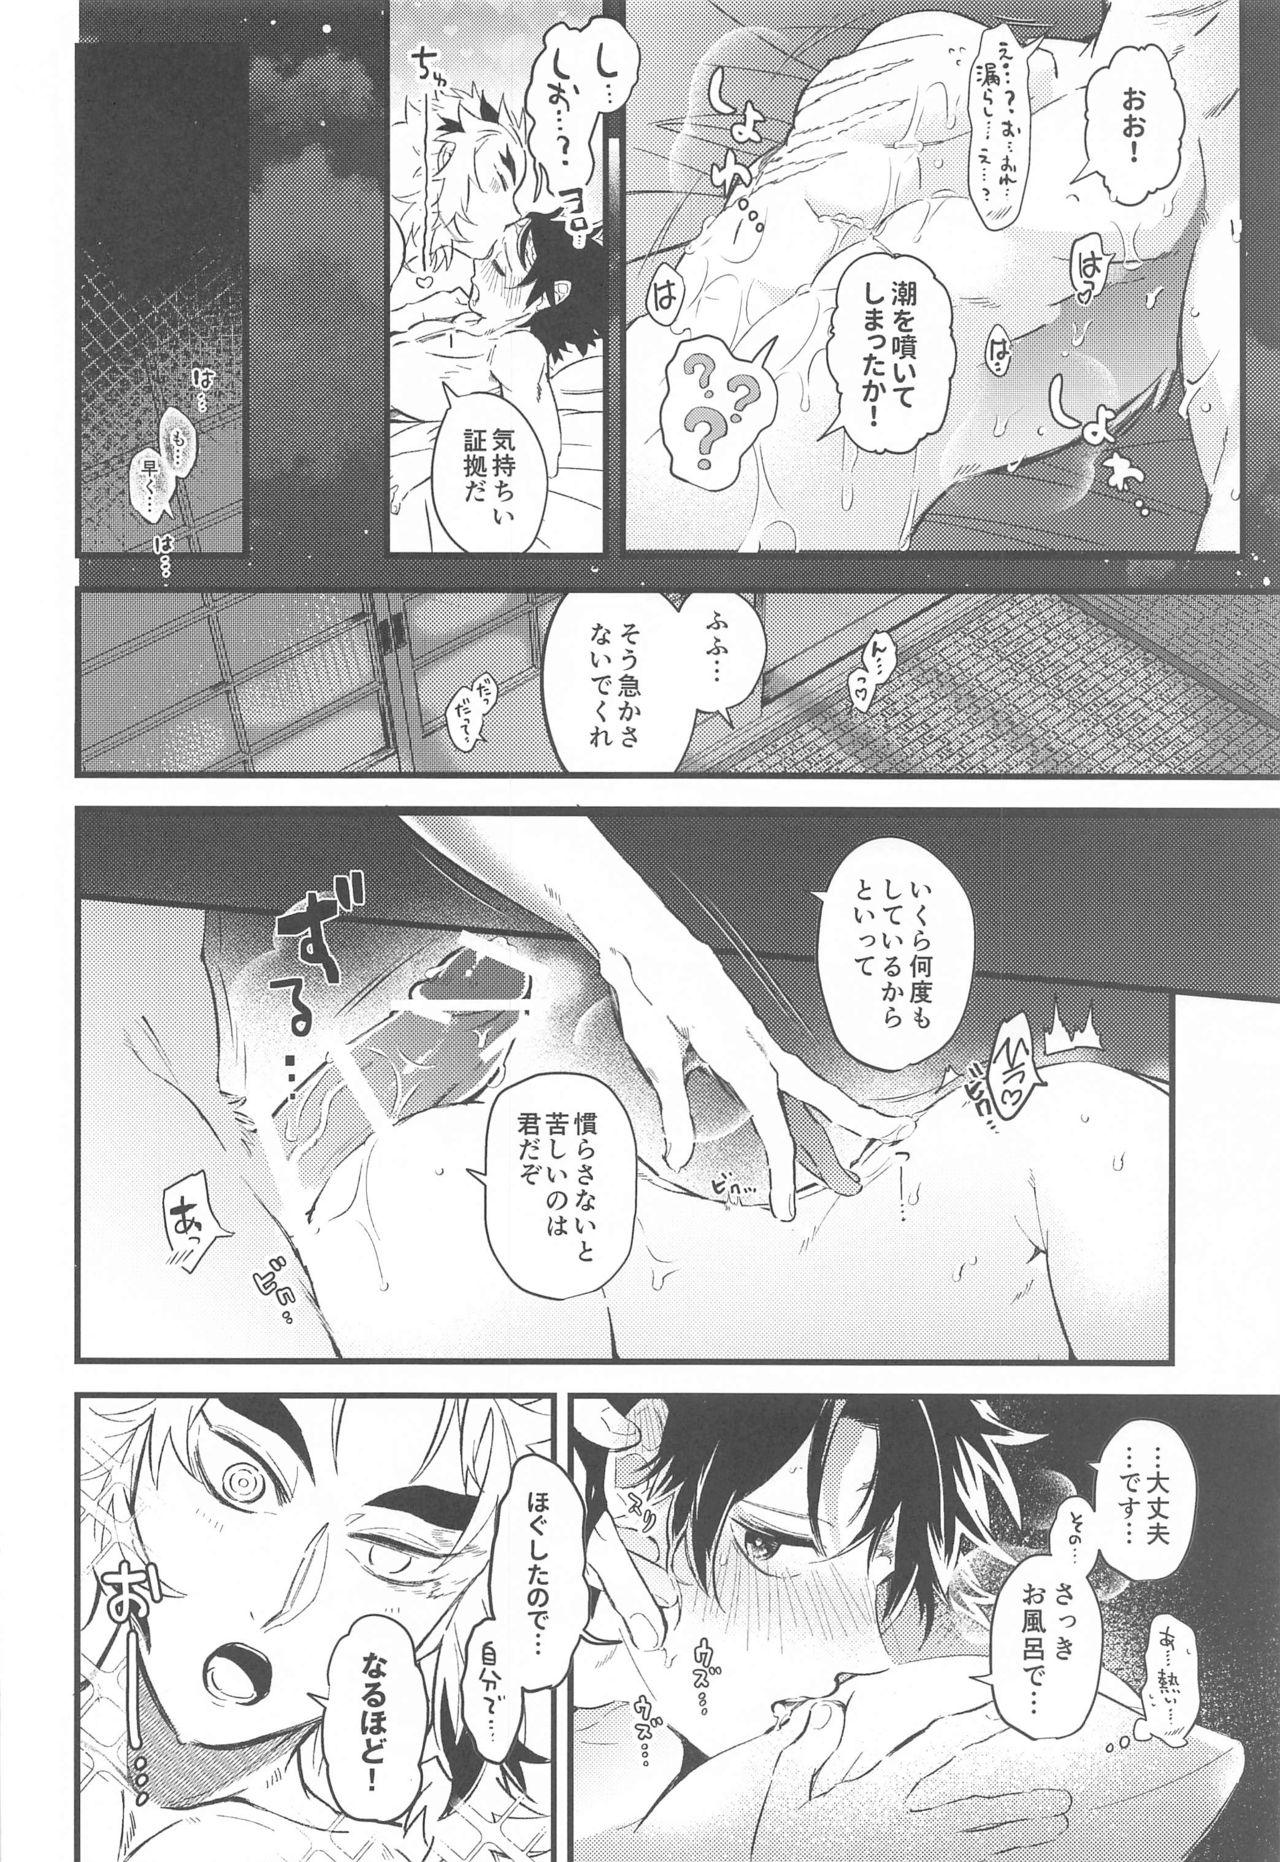 Farting sonokakushakunitokeru - Kimetsu no yaiba | demon slayer Shower - Page 9